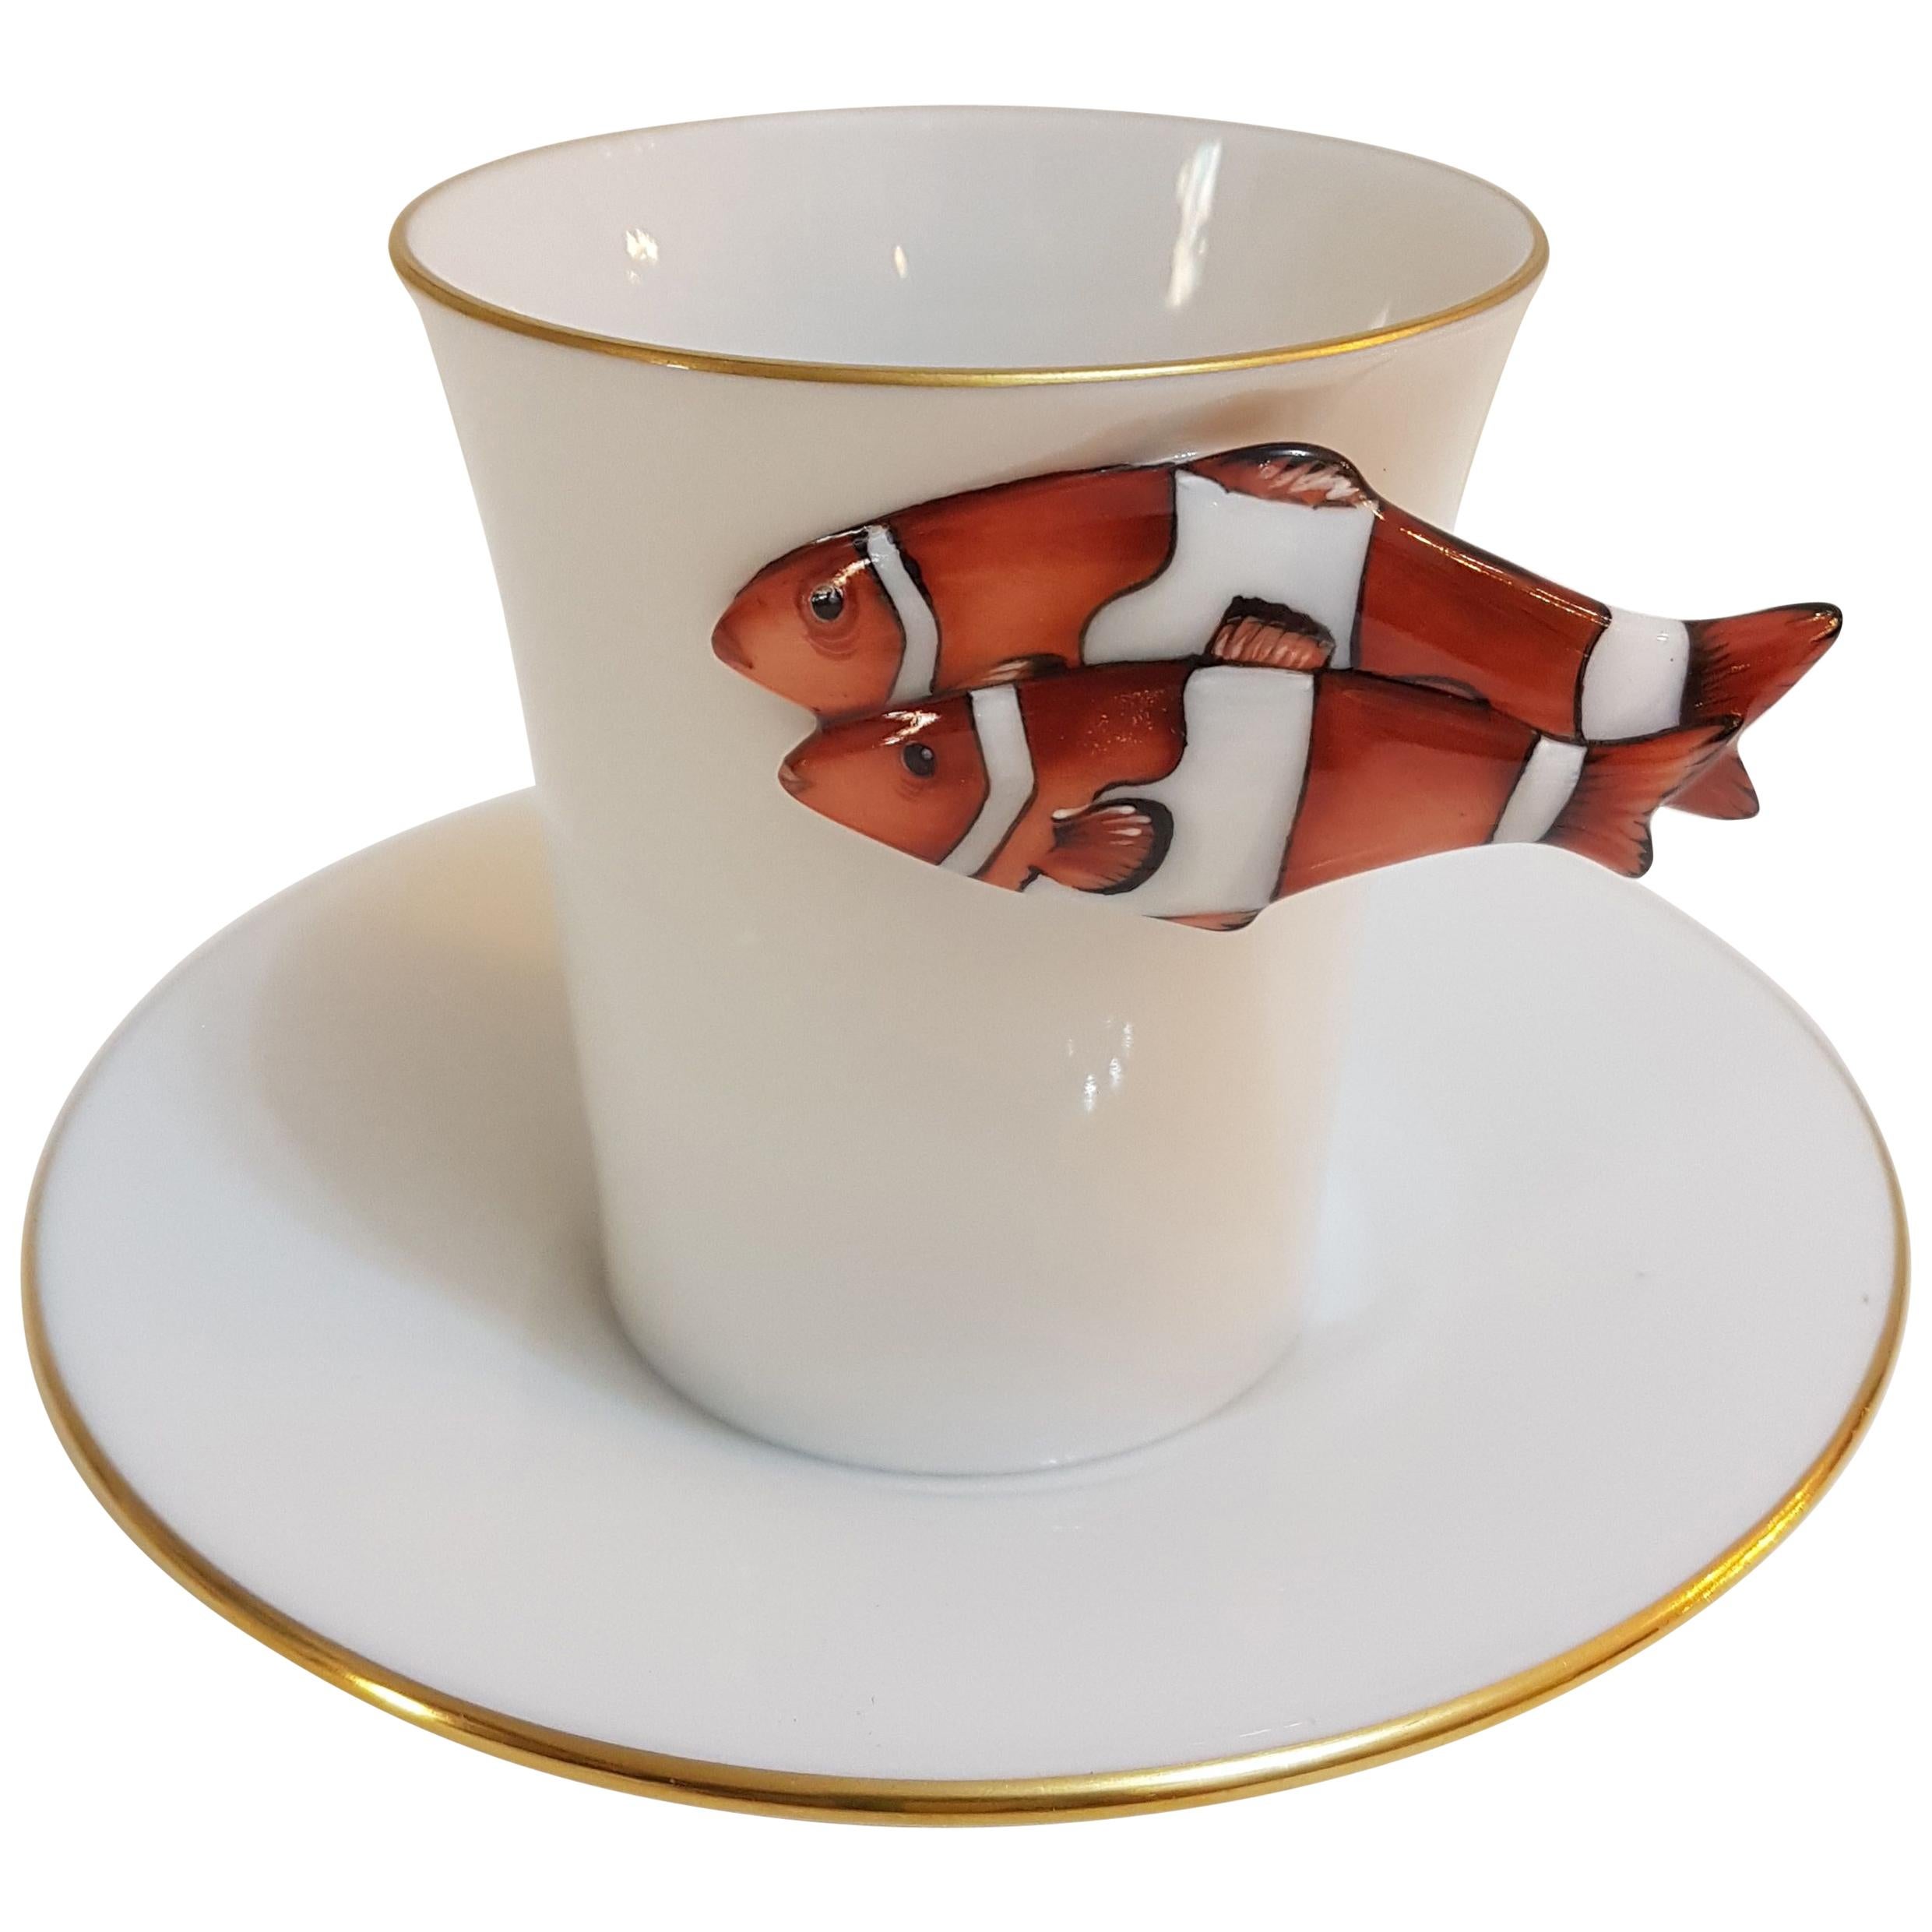 Herend "Clownfisch" Handgemalte Ungarische Porzellan Kaffeetasse und Untertasse